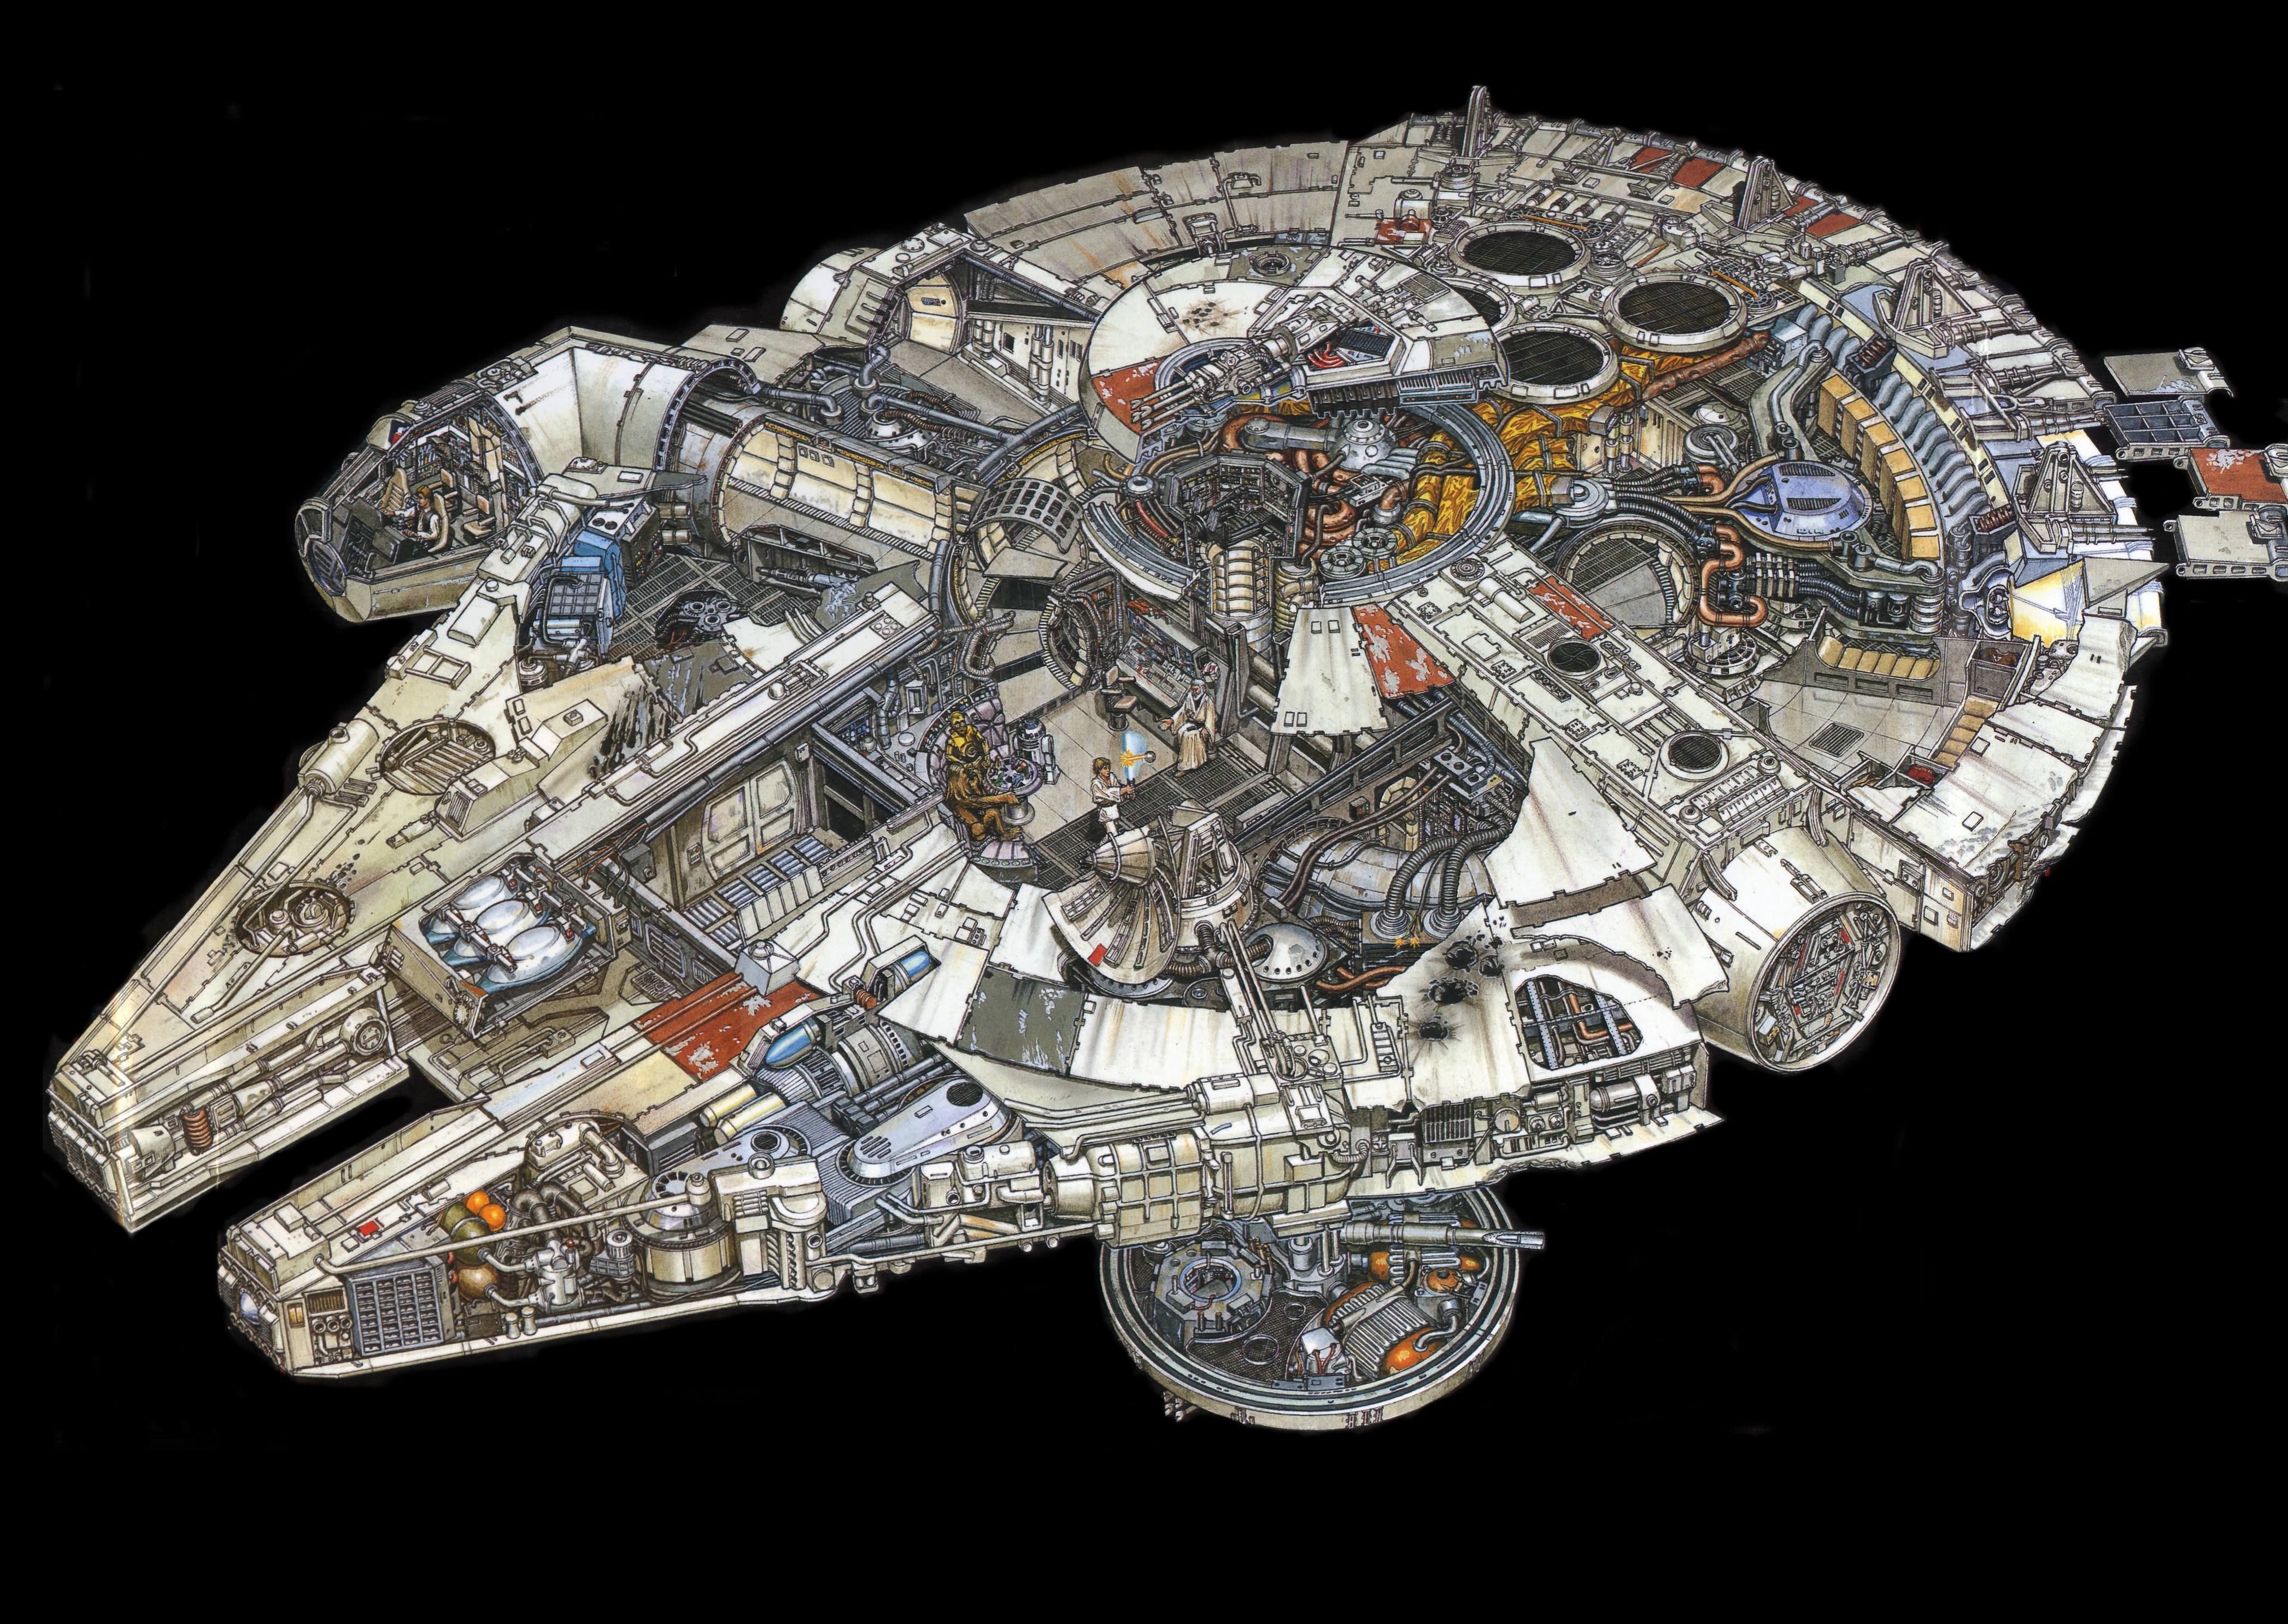 Звездные Войны, кино, C3PO, R2D2, Люк Скайуокер, Хан Соло, Чубакка, космические корабли, Тысячелетний сокол, транспортные средства, поперечное сечение - обои на рабочий стол